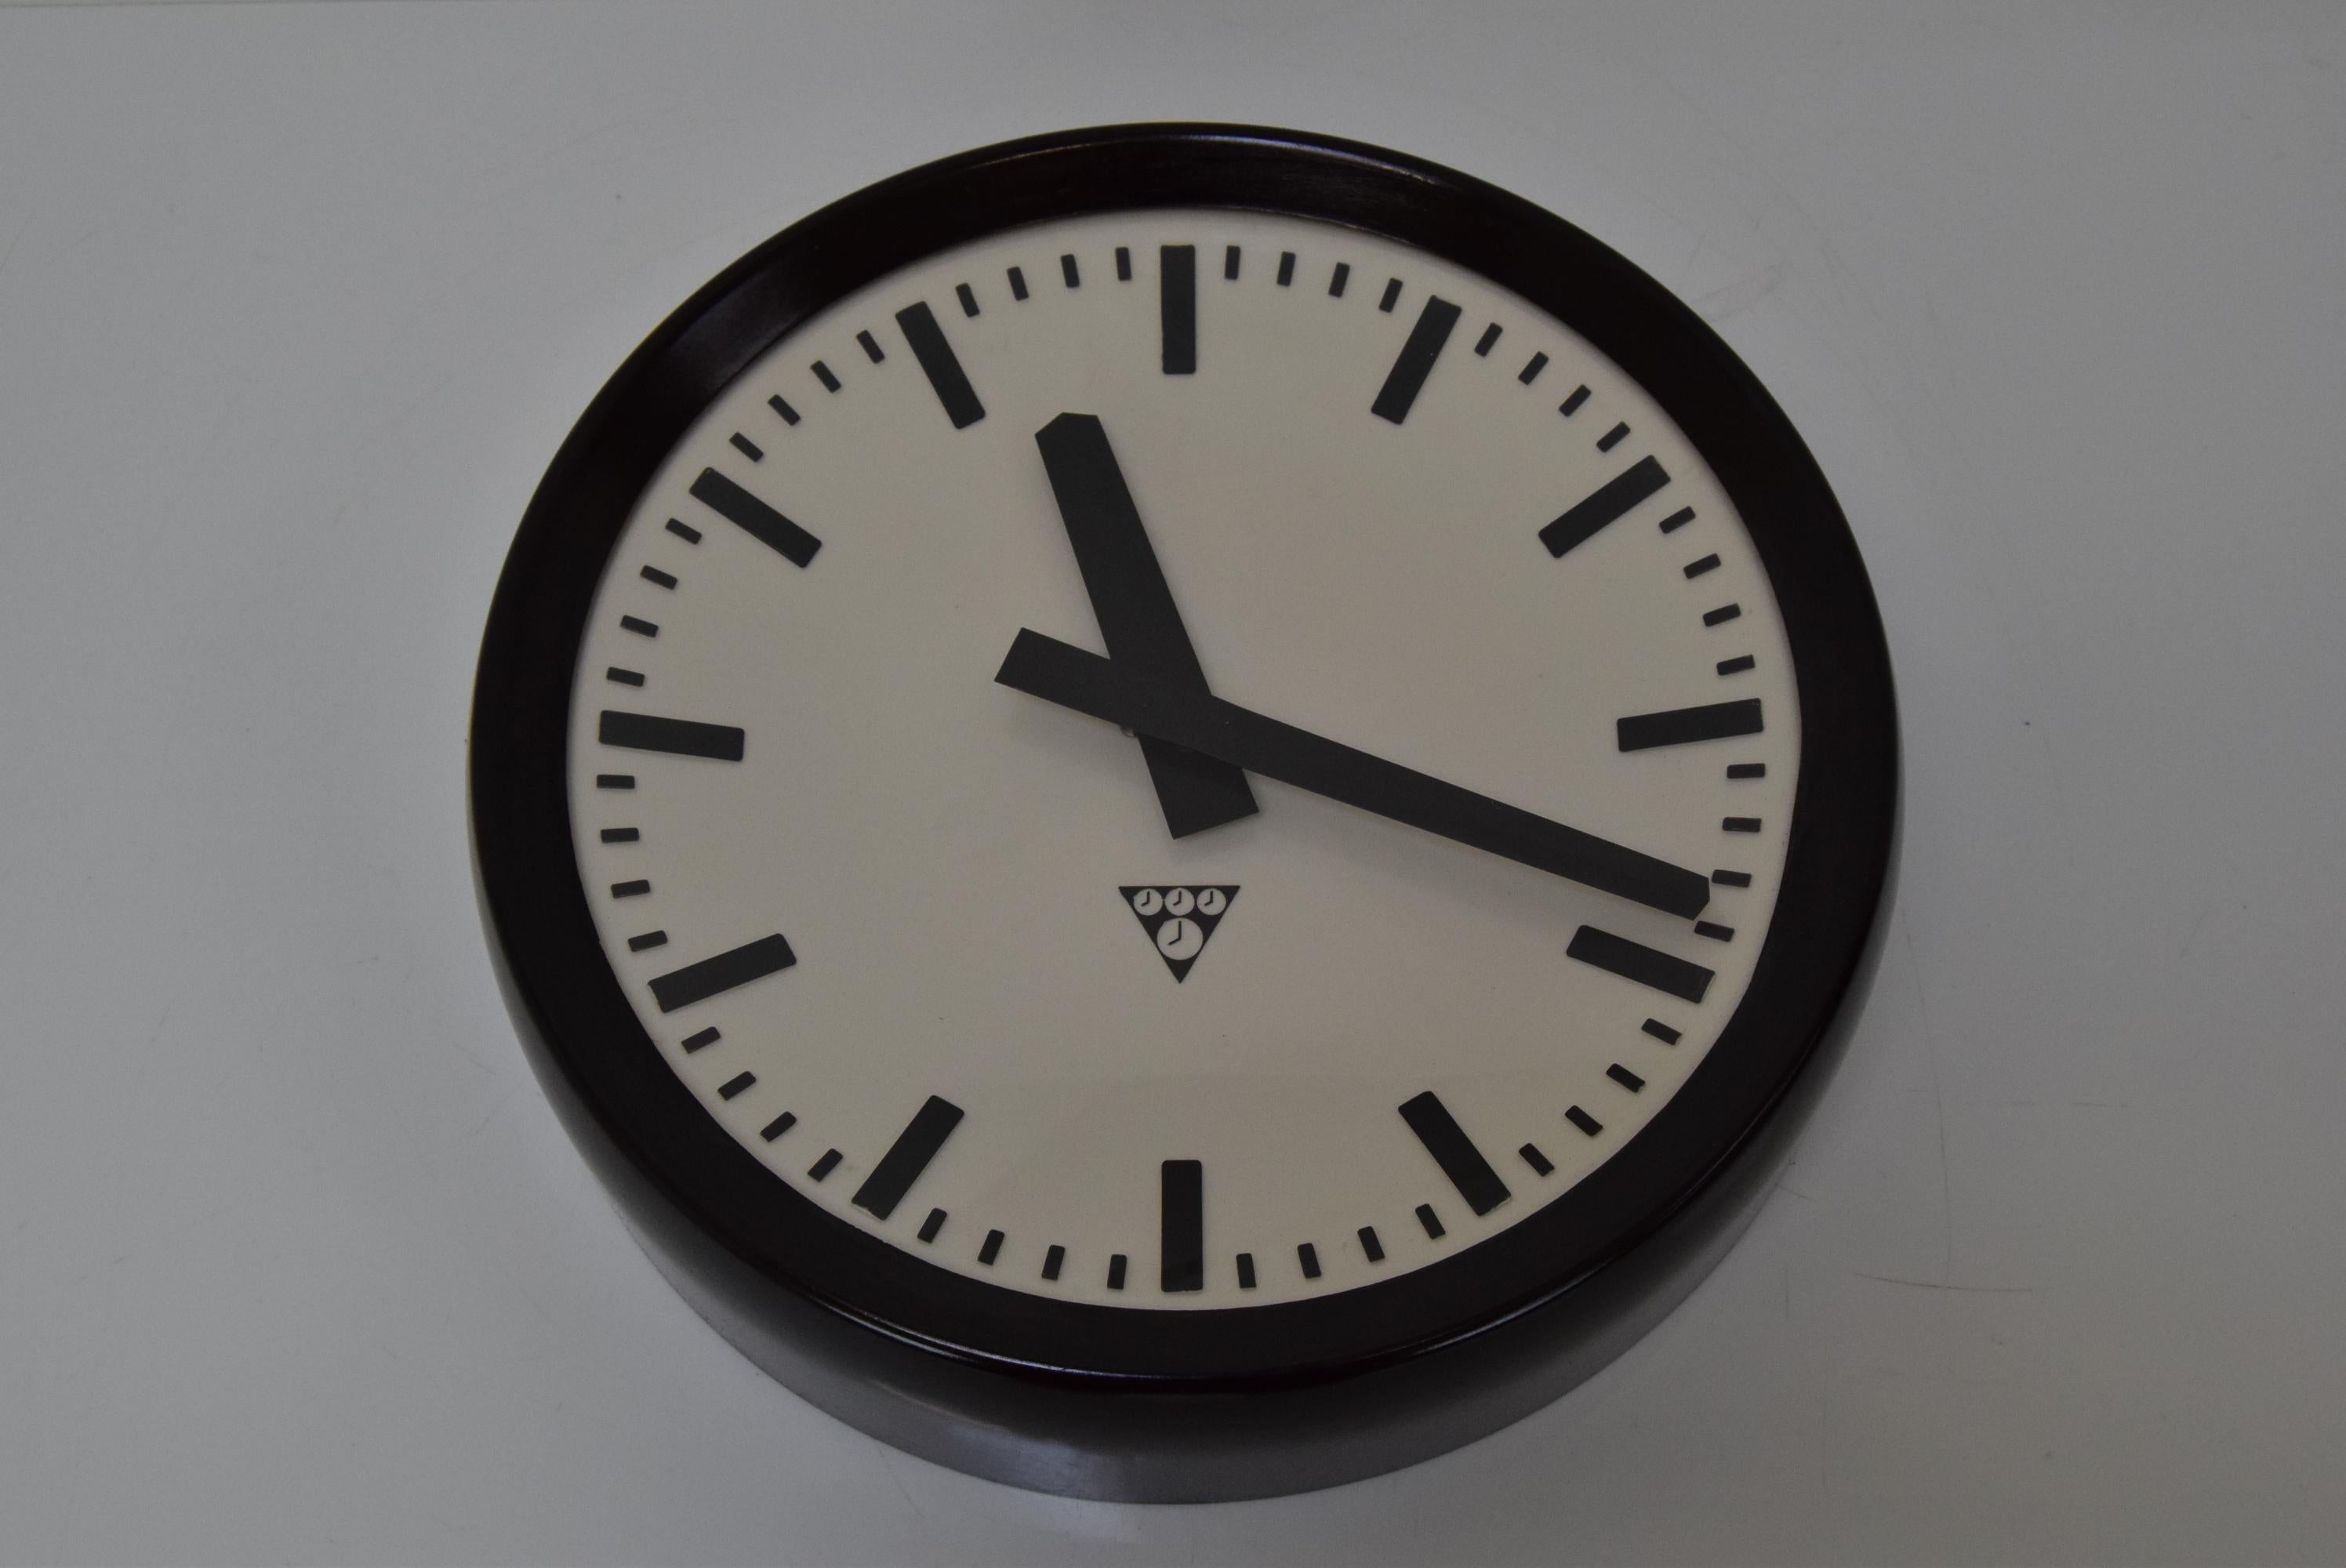 
Hergestellt in der Tschechoslowakei
Hergestellt aus Glas, Bakelit
Sie ist jetzt mit einem modernen Uhrwerk mit AA-Batterie ausgestattet.
Vollständig funktionsfähig
Guter Originalzustand